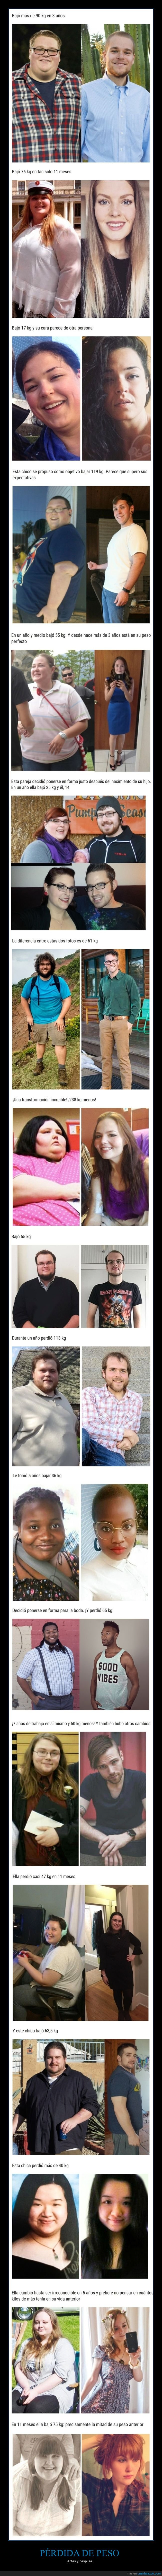 gordos,perder peso,antes,después